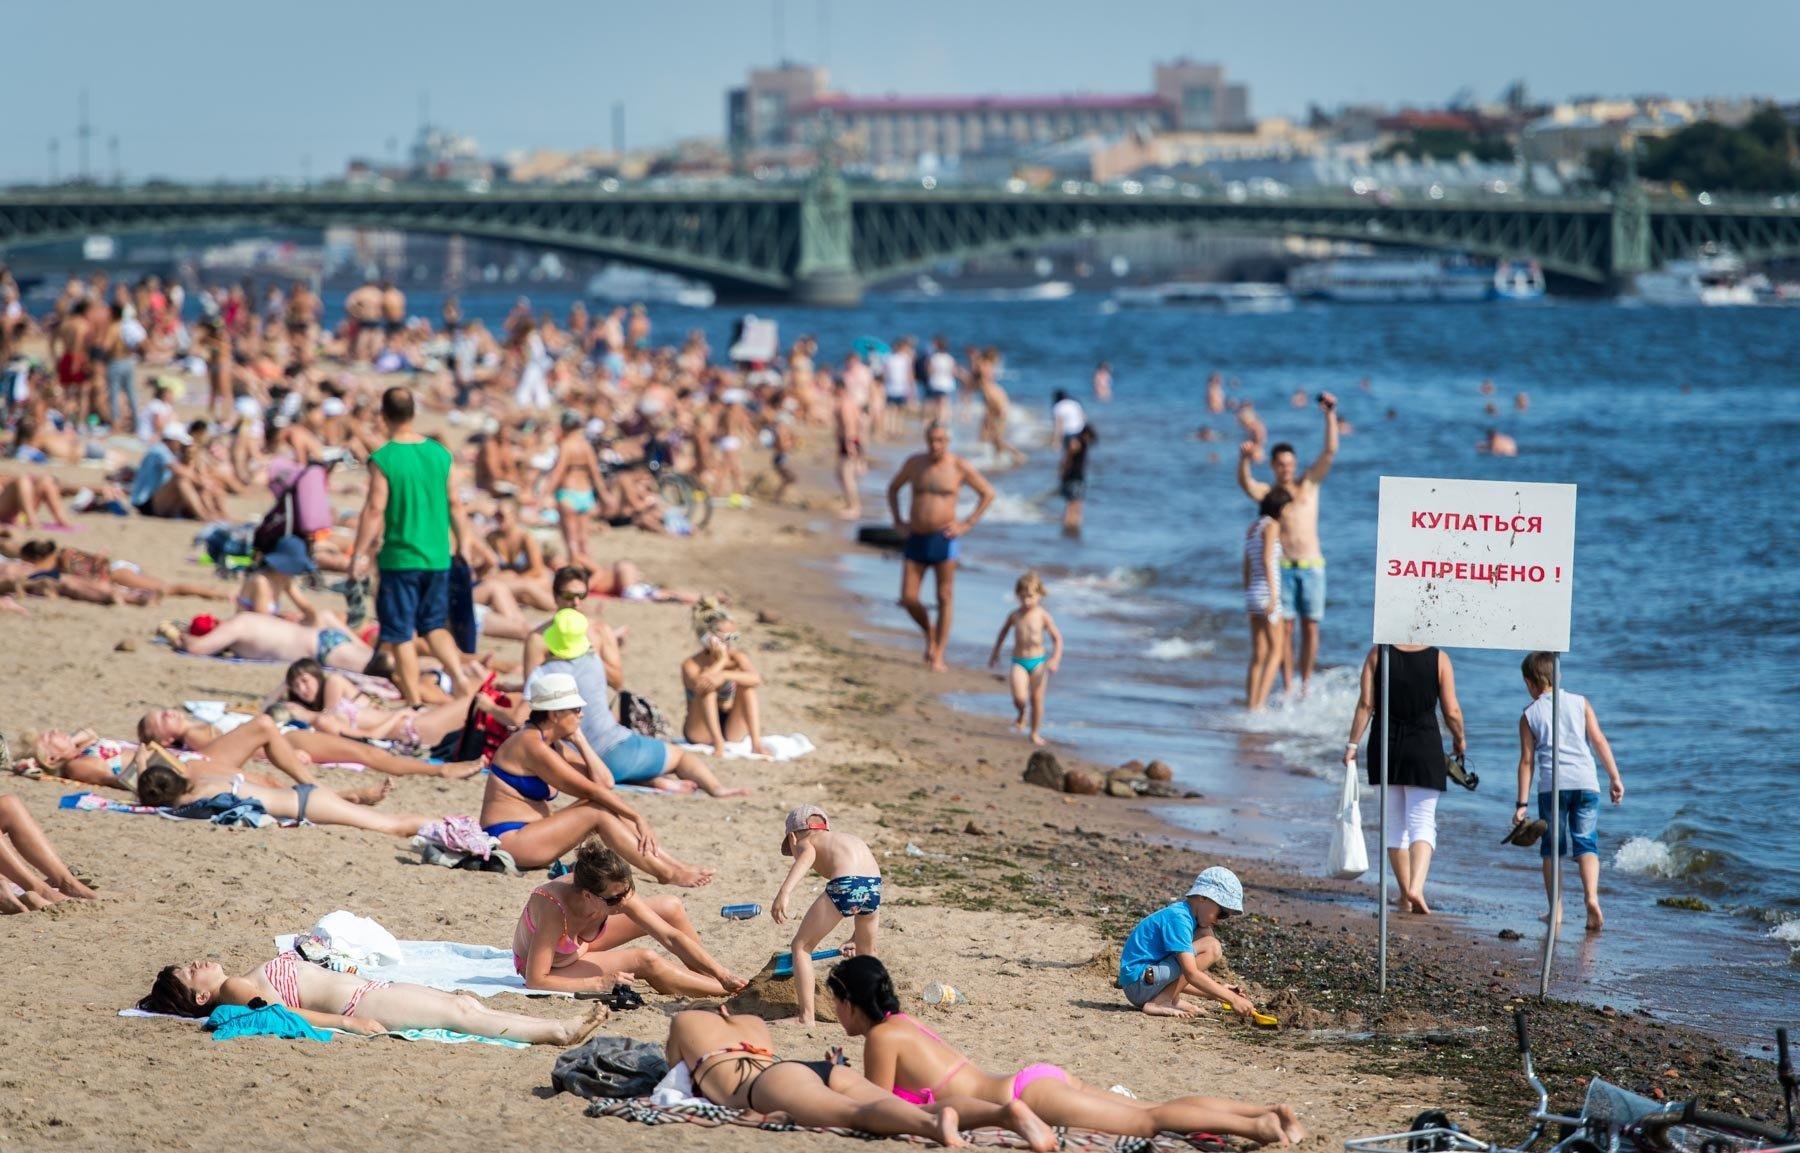 Пляжи санкт-петербурга: обзор и описание лучших мест (с фото) | все пляжи мира